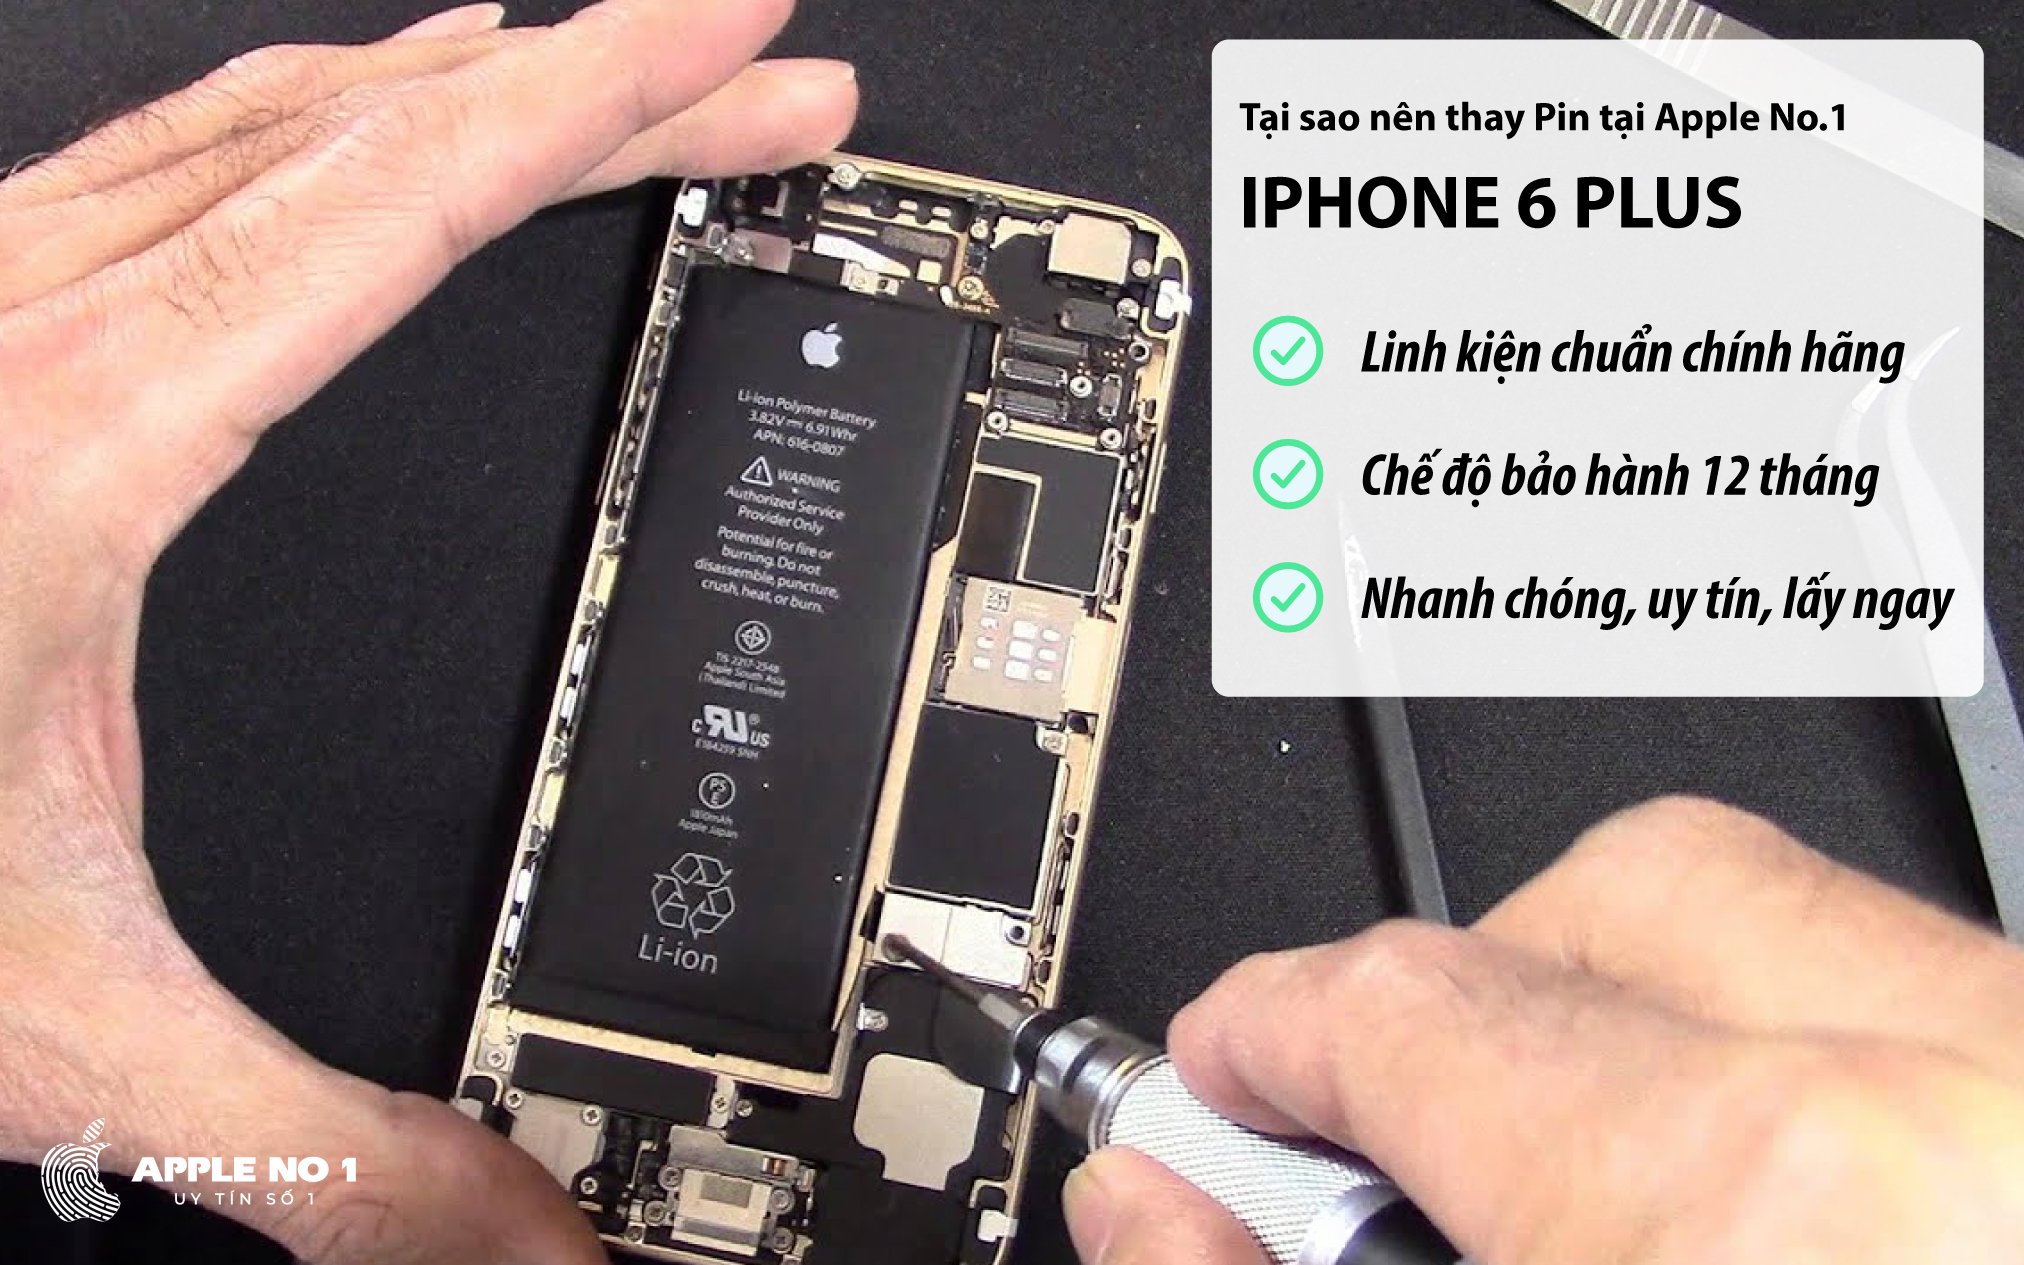 Thay pin iPhone 6 Plus dung lượng chuẩn chính hãng tại Apple No.1